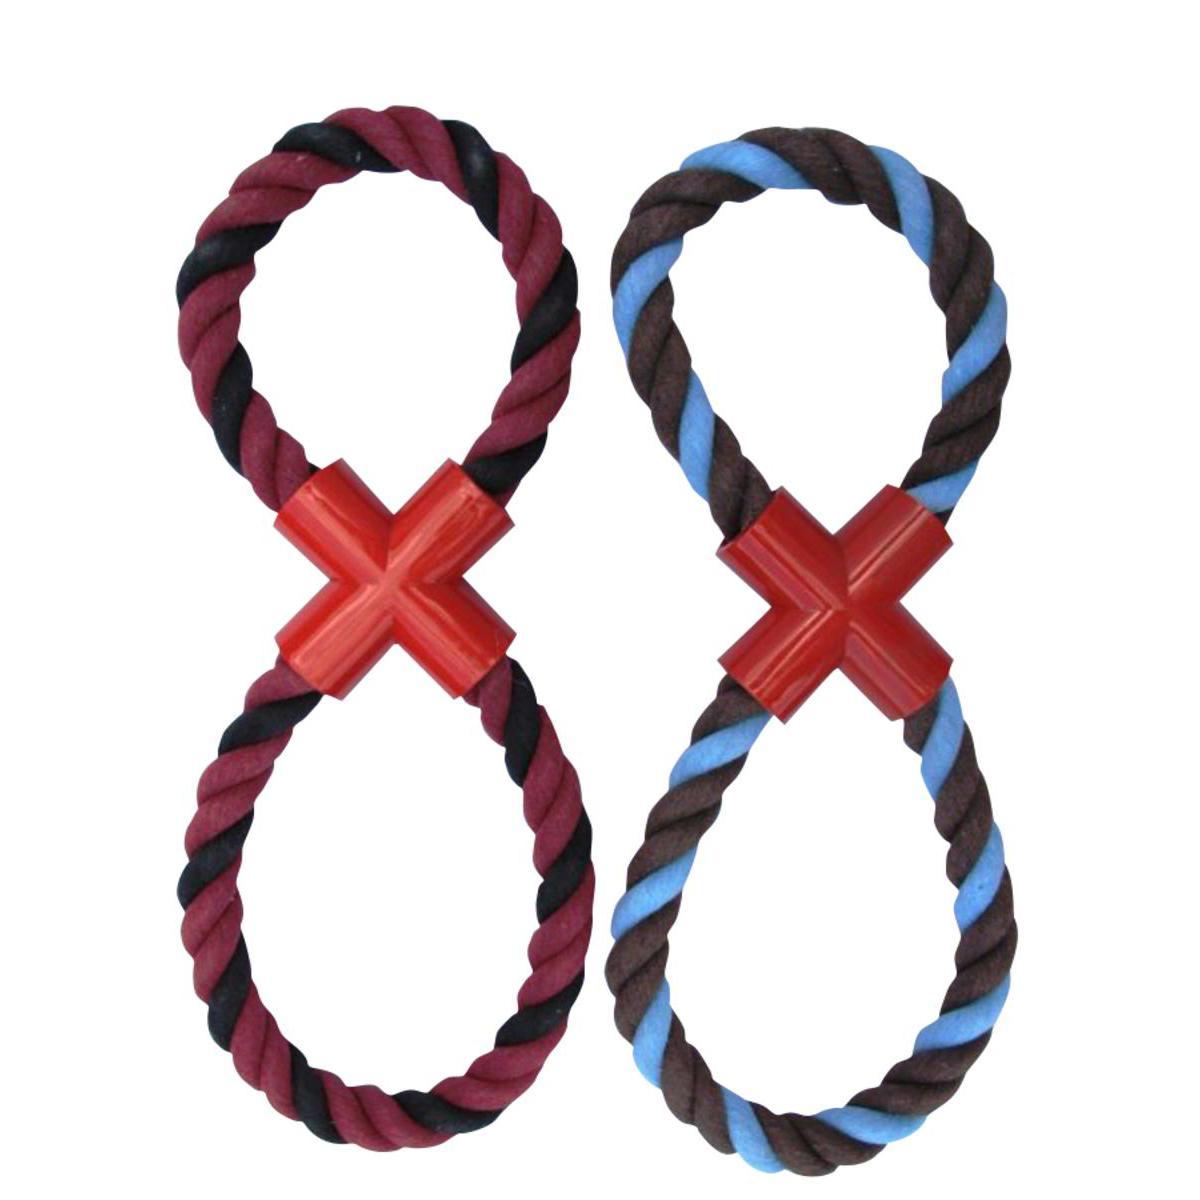 Jouet coton forme 8 - Coton - 35 x 14 x H 2 cm - Noir, rouge, bleu ou marron